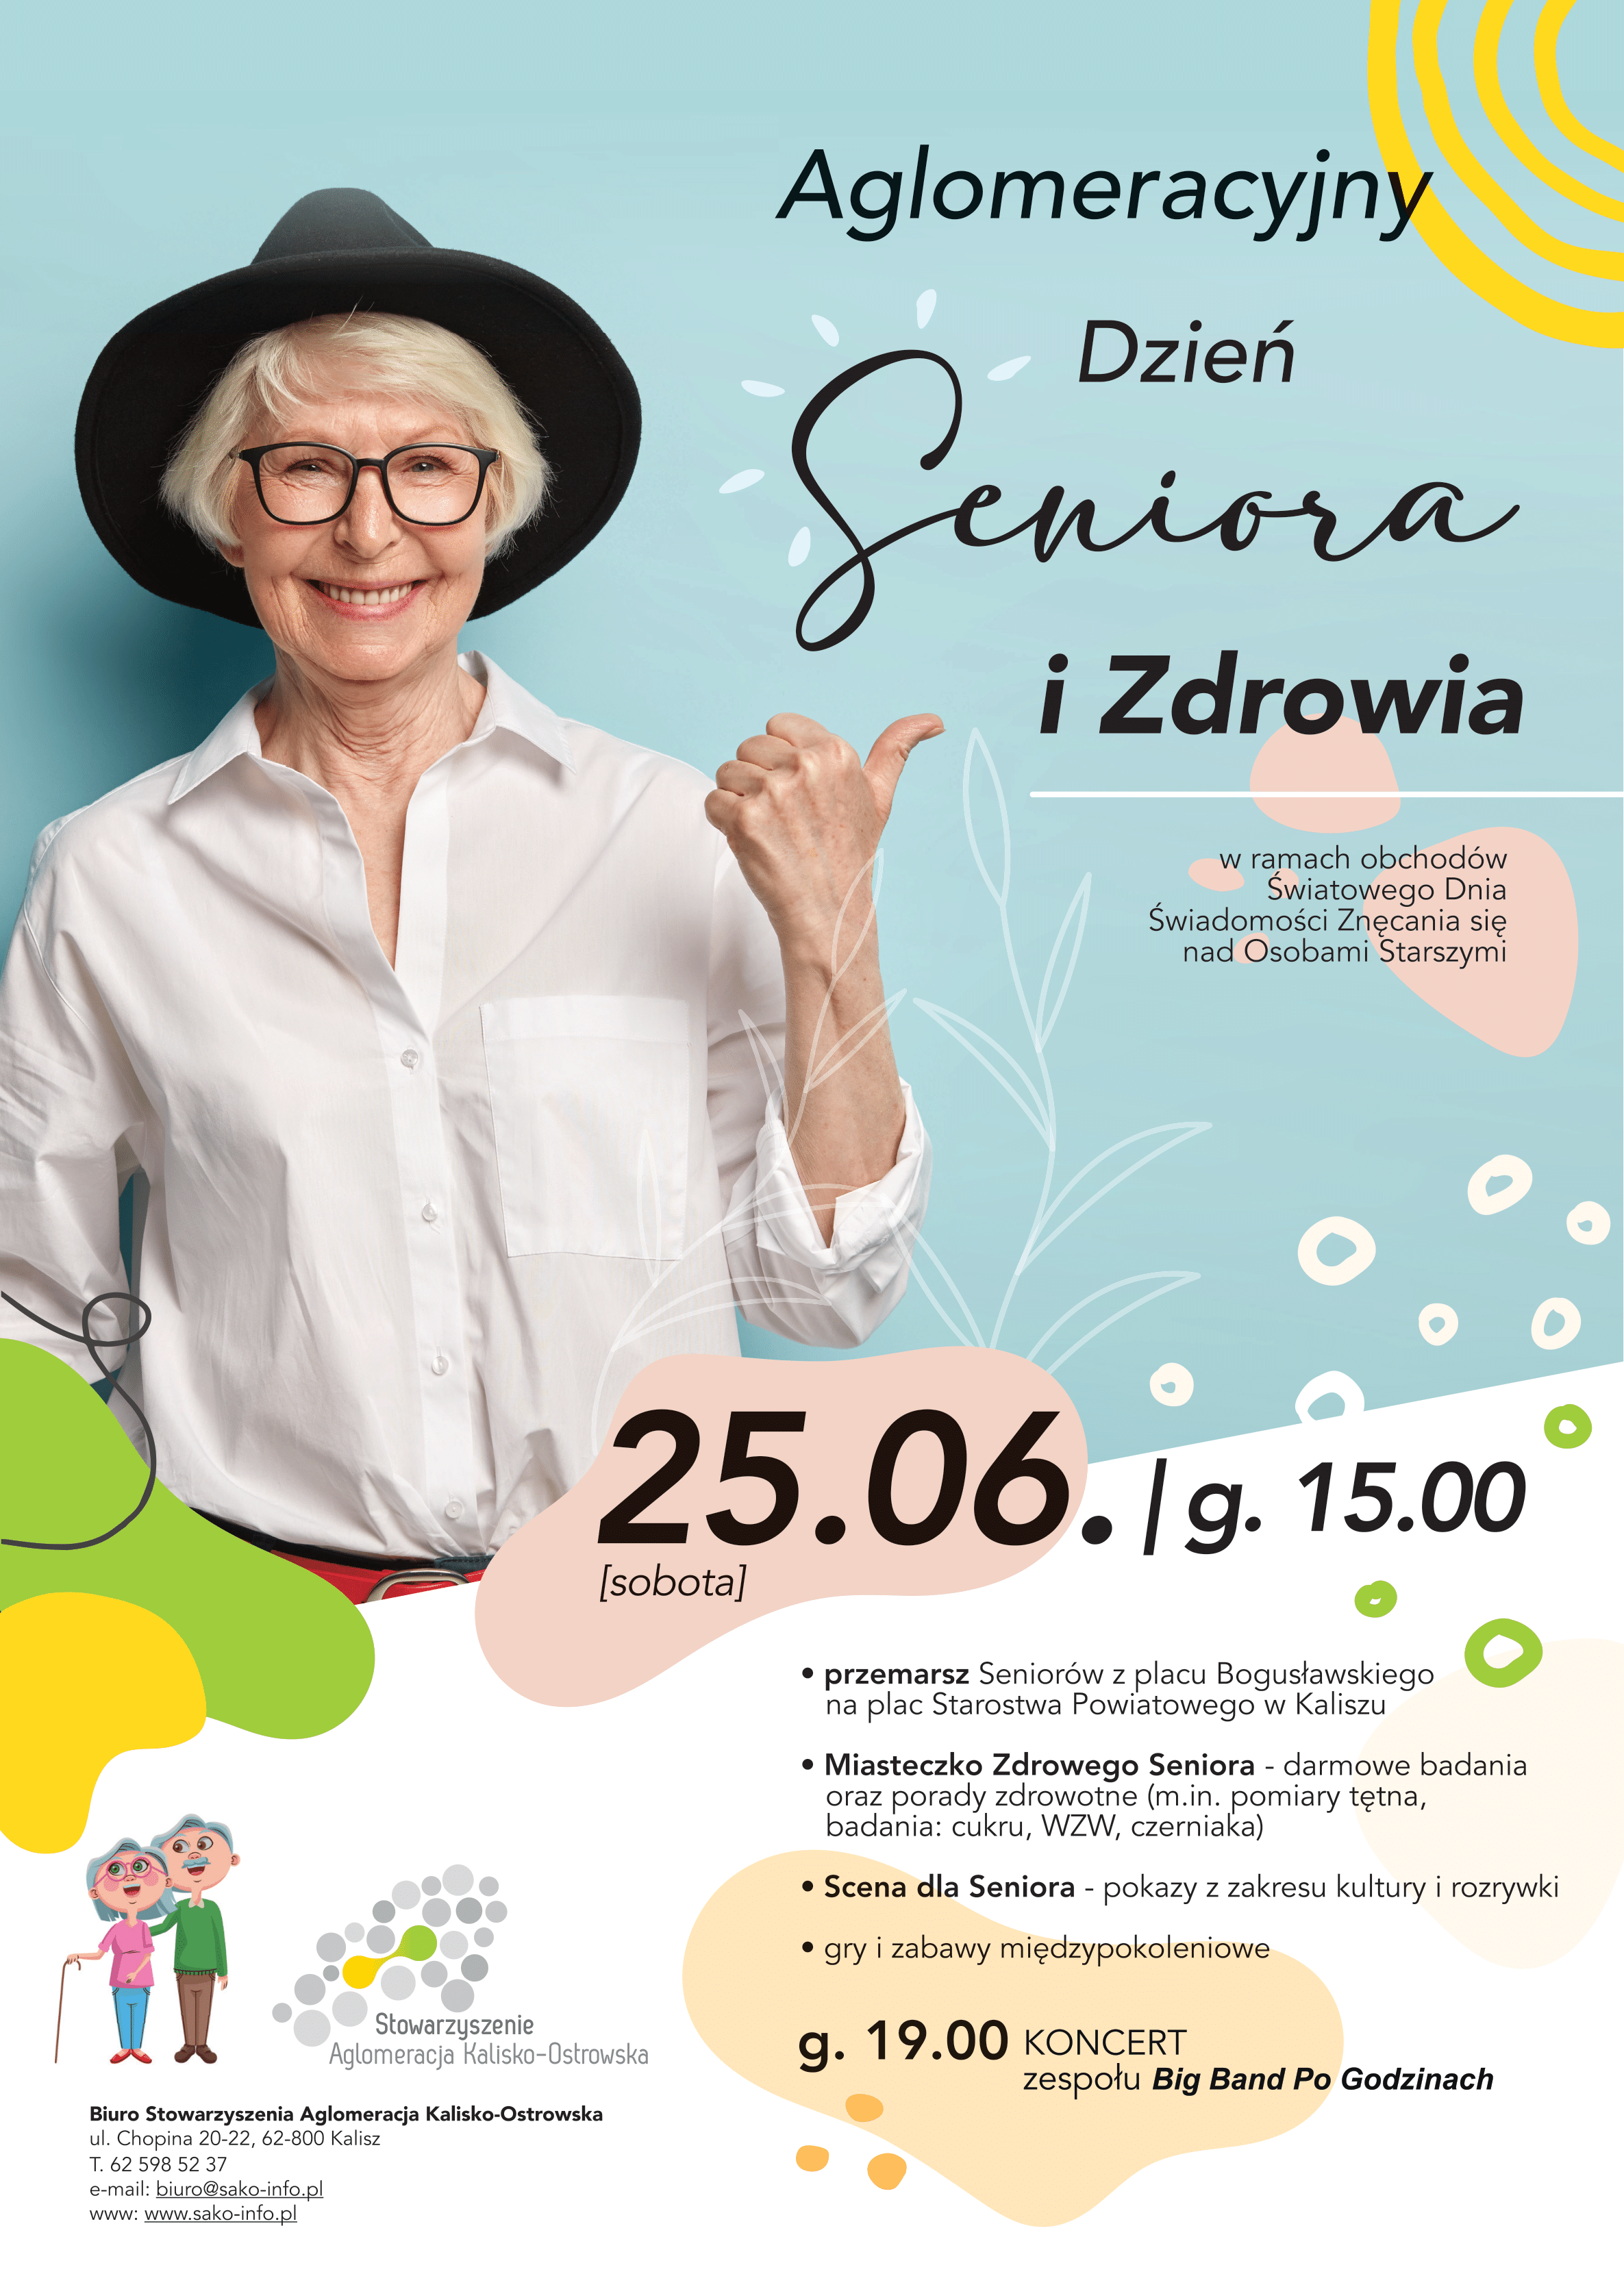 Zaproszenie na Aglomeracyjny Dzień Seniora i Zdrowia, który odbędzie się dnia 25 czerwca 2022 na Placu Starostwa Powiatowego w Kaliszu  o godzinie 15:00